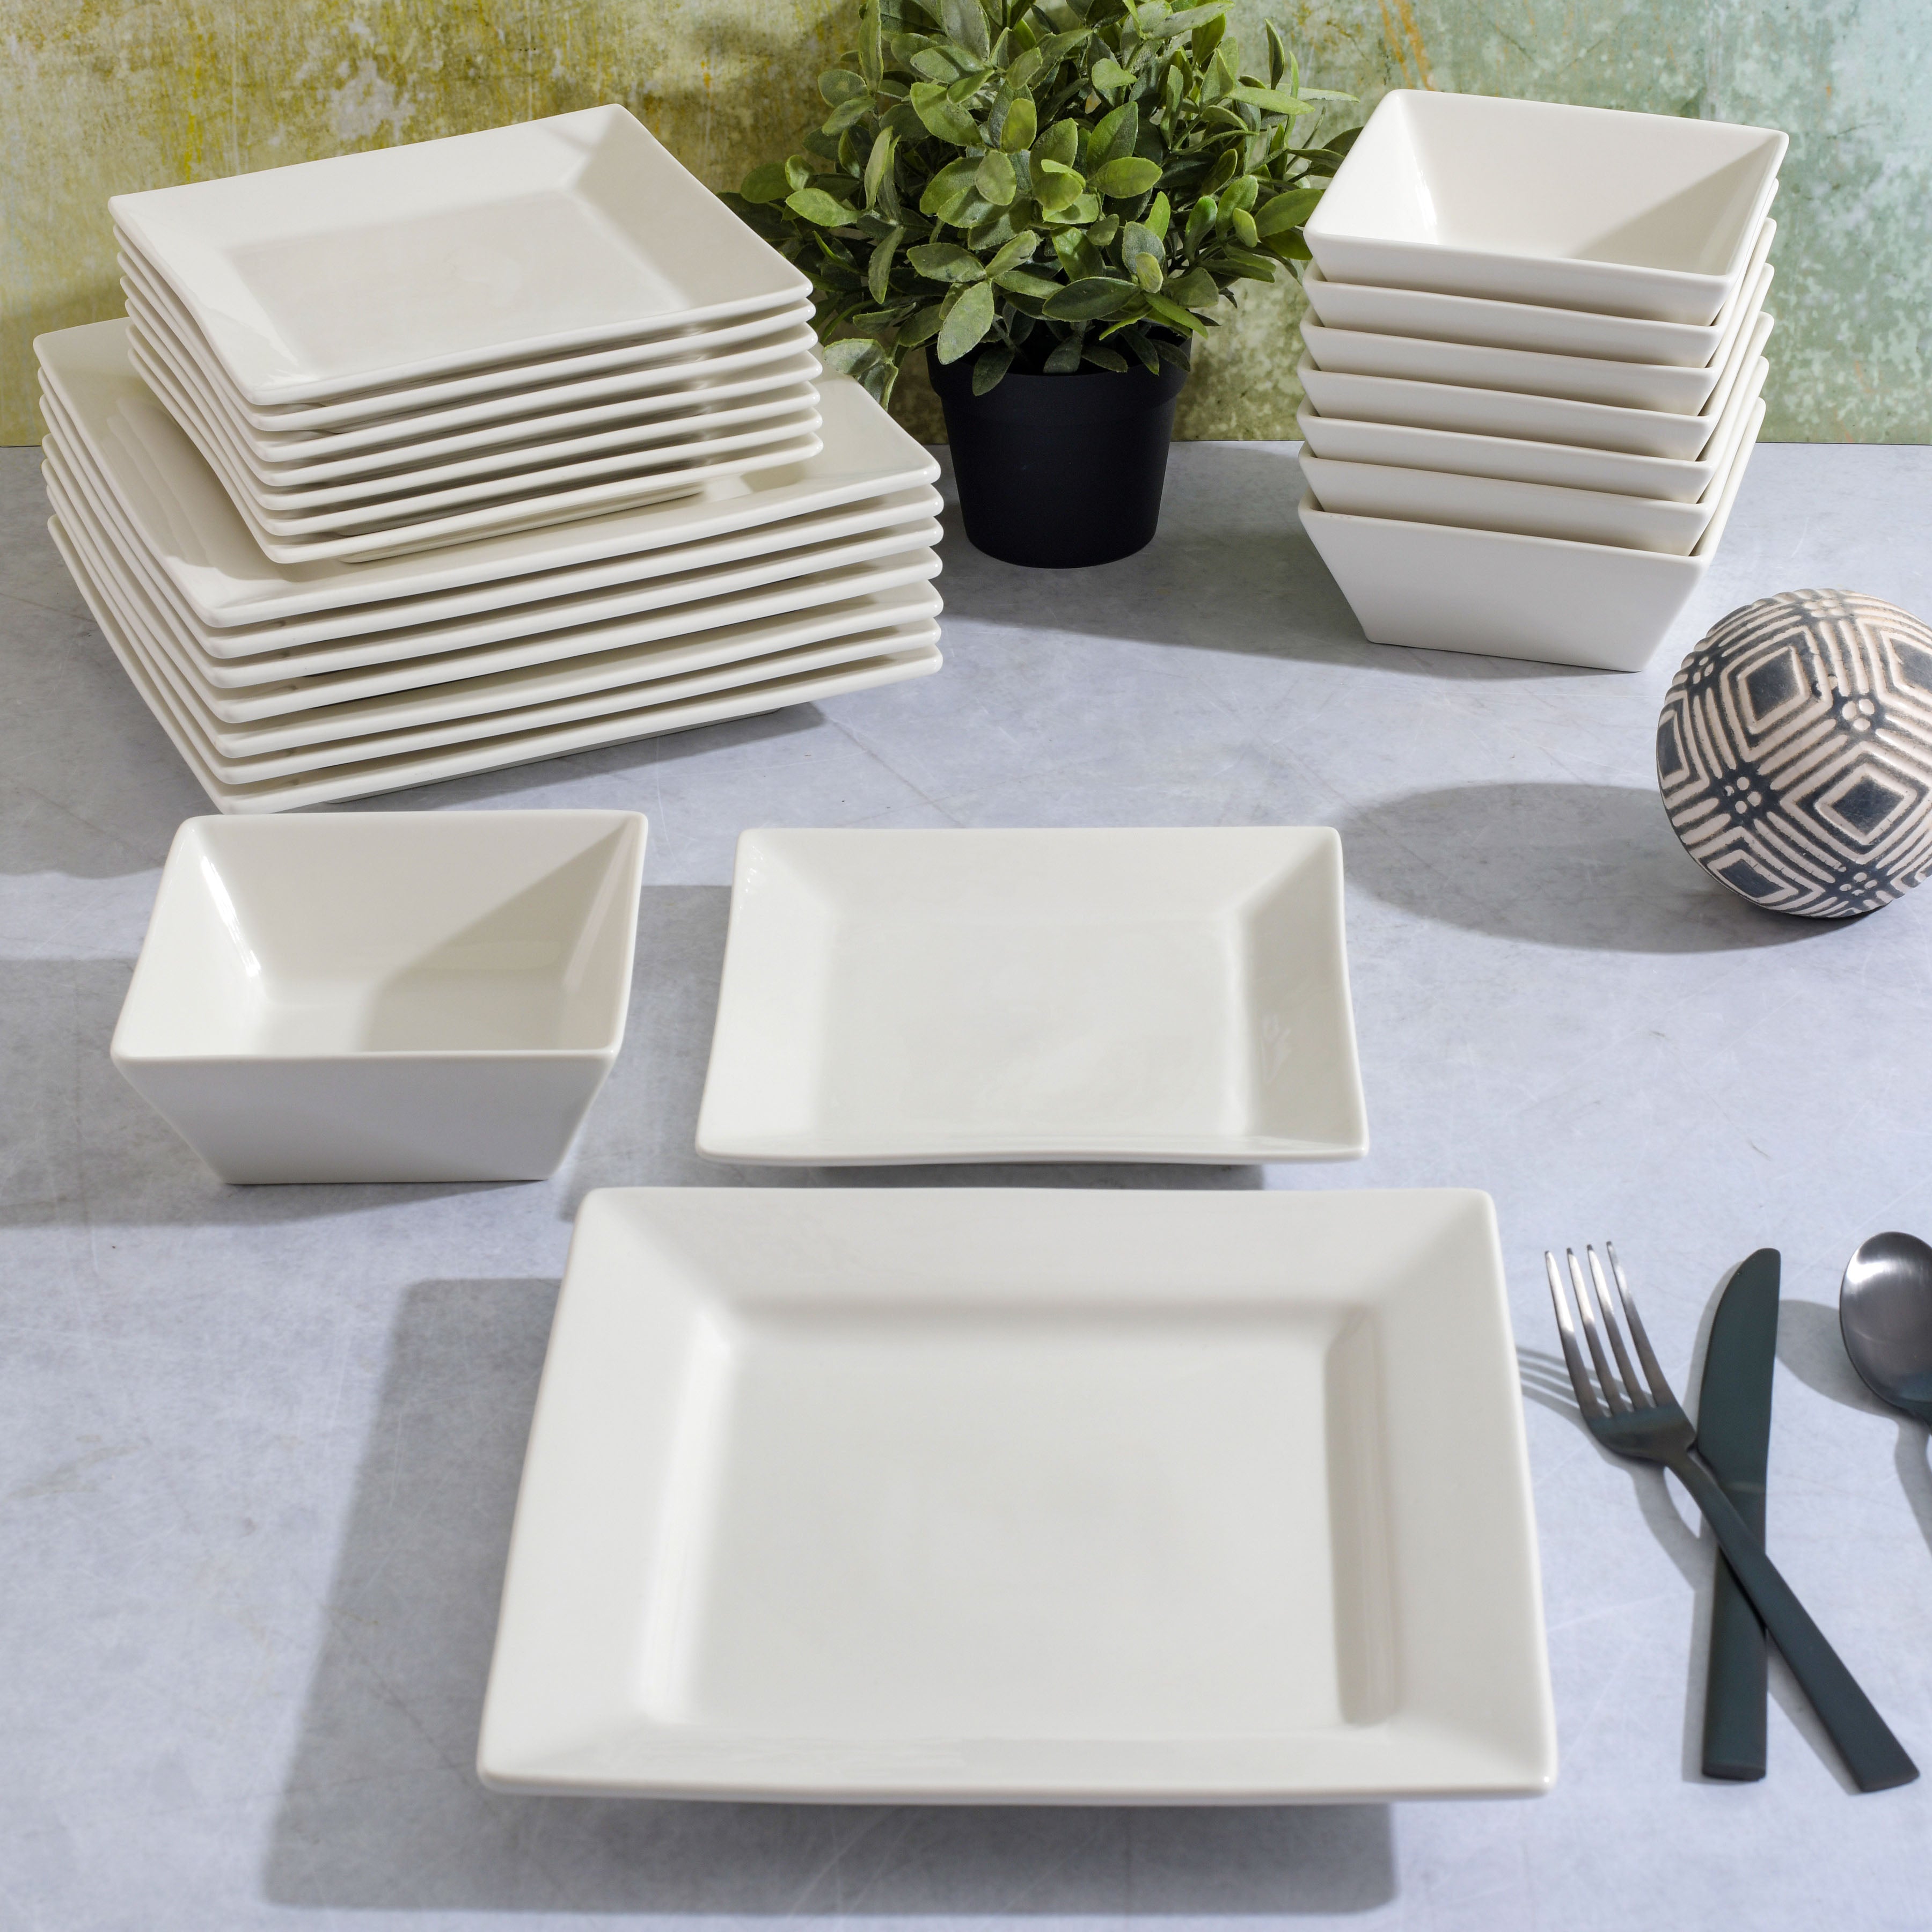 Gibson Home Zen Buffet Hard Square 24-Piece Porcelain Dinnerware Set